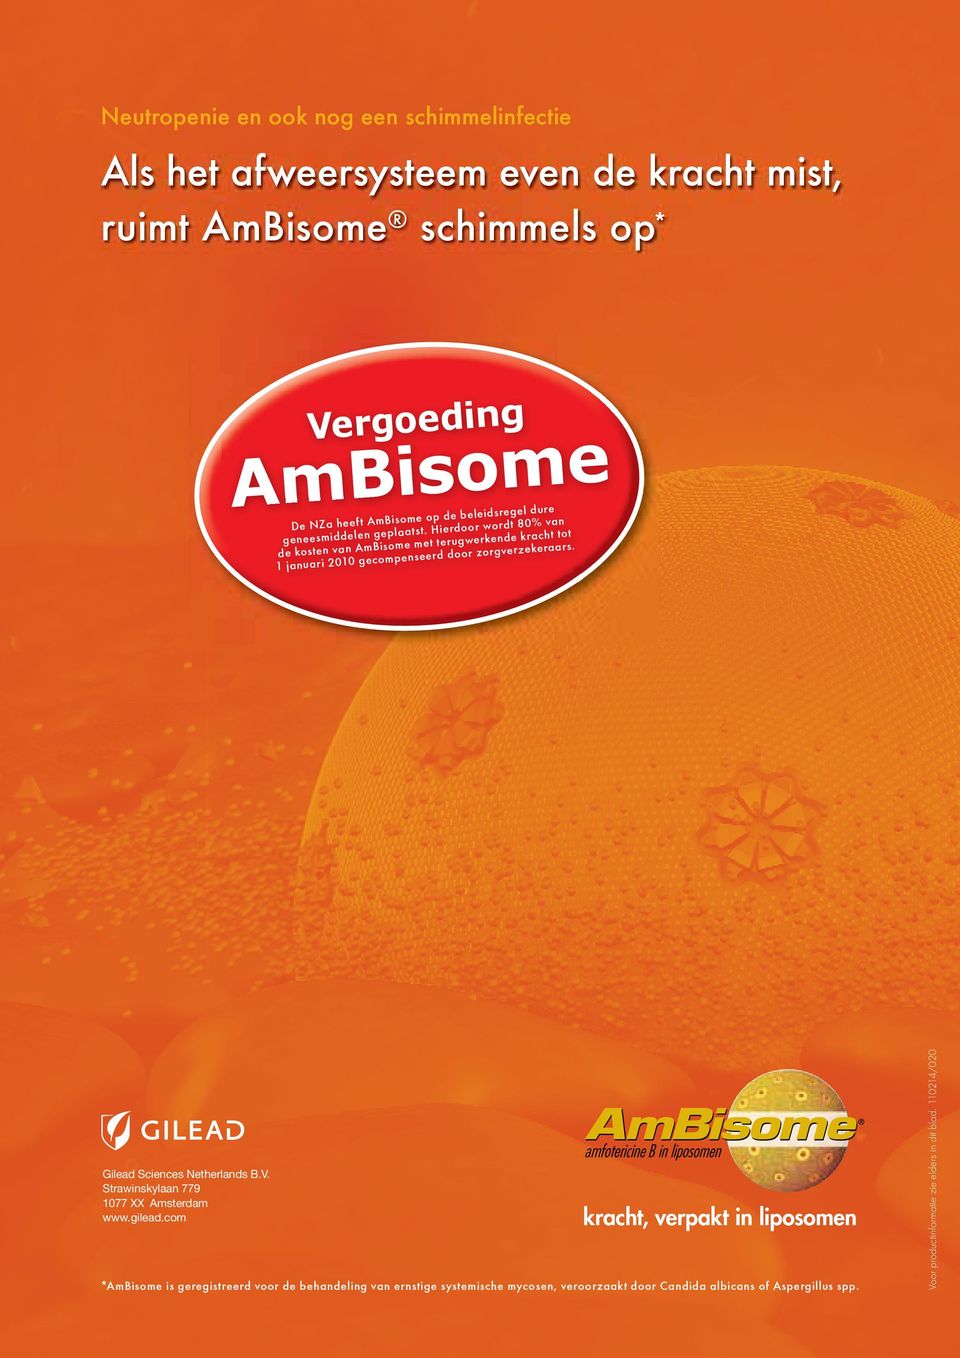 Hierdoor wordt 80% van de kosten van AmBisome met terugwerkende kracht tot 1 januari 2010 gecompenseerd door zorgverzekeraars. Gilead Sciences Netherlands B.V.